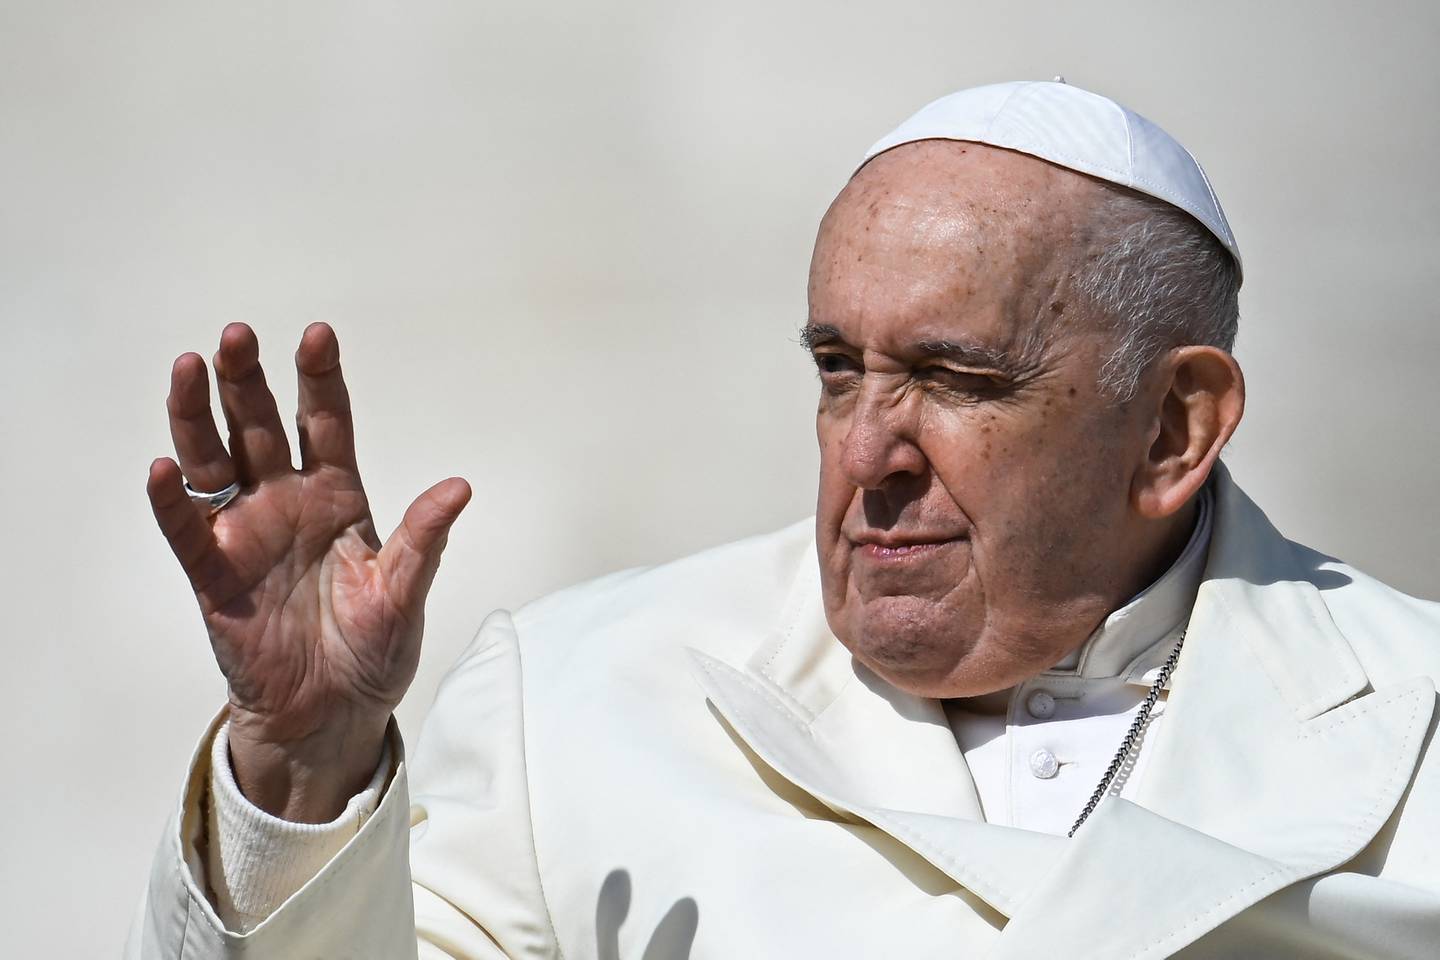 El papa Francisco admite que viajar resulta “más difícil”, el papa continúa recorriendo el planeta con temas representativos de su pontificado.